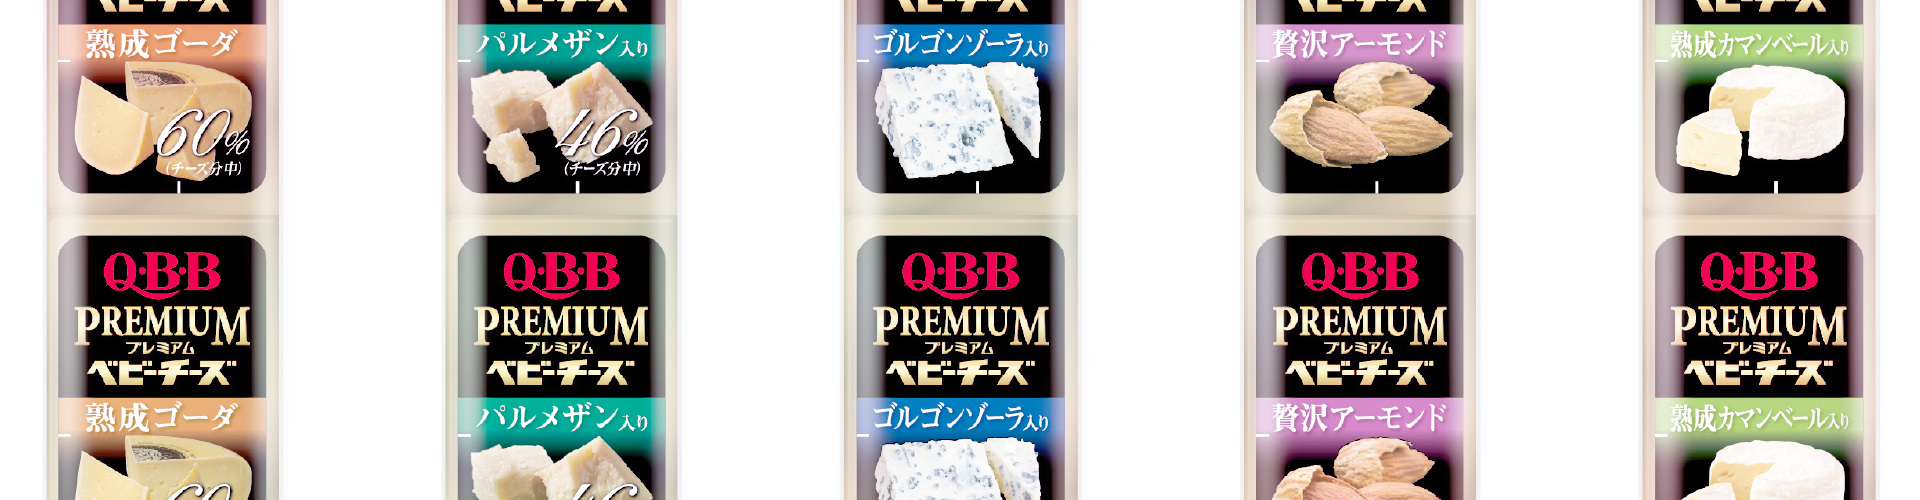 QBBプレミアムベビーチーズ シリーズ パッケージ